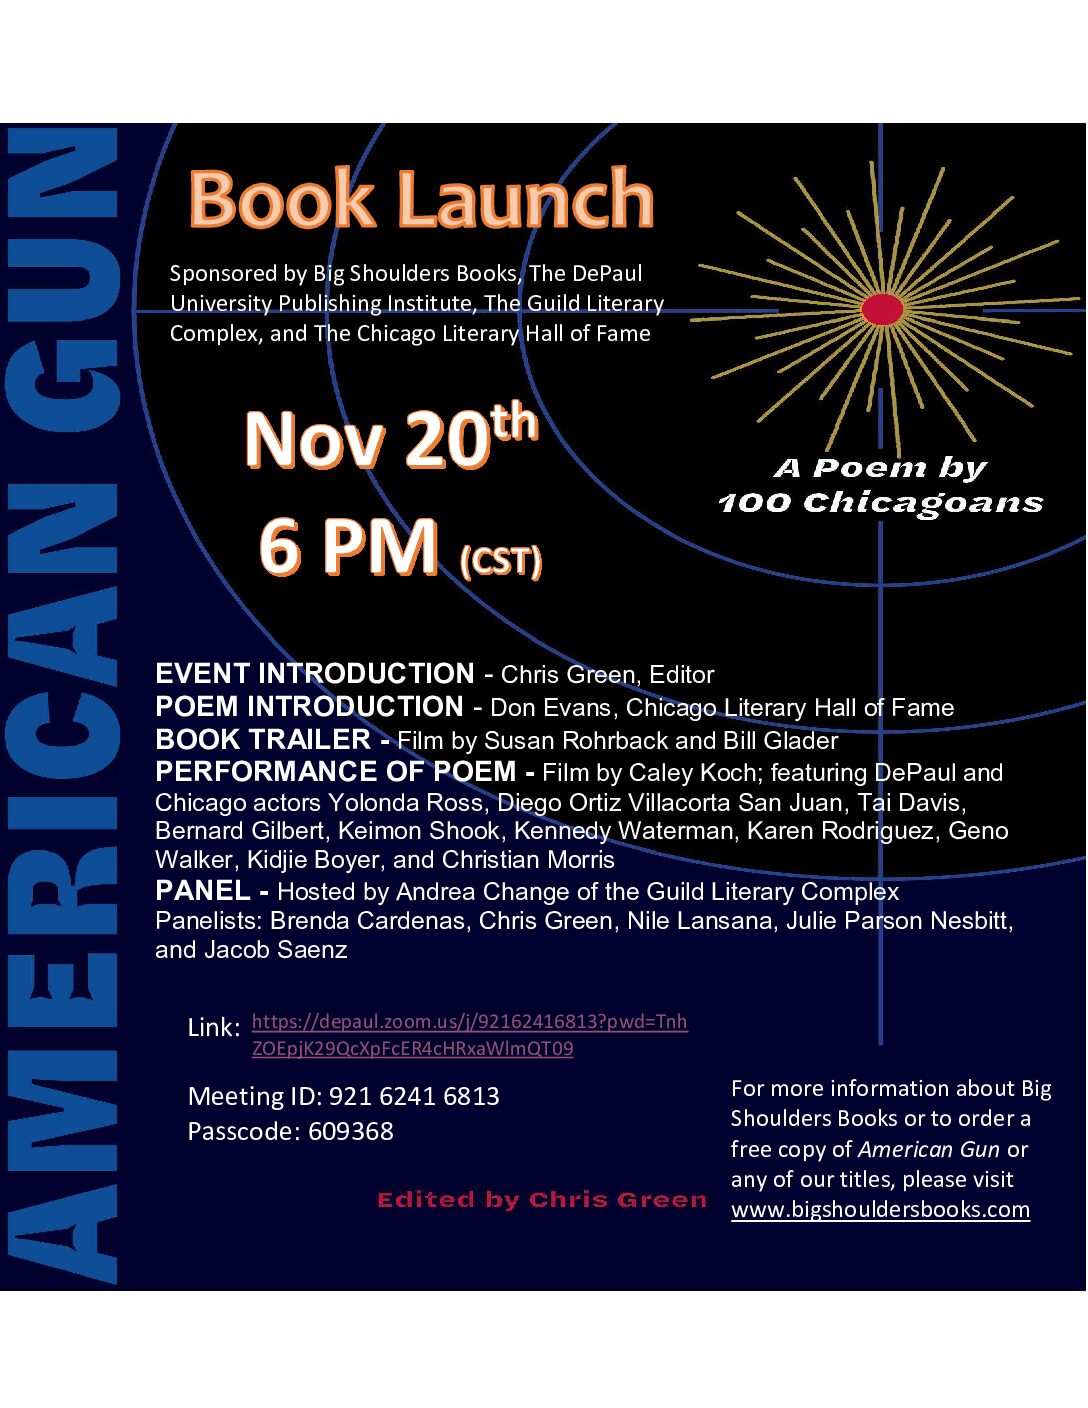 American Gun Book Launch Flyer Invite